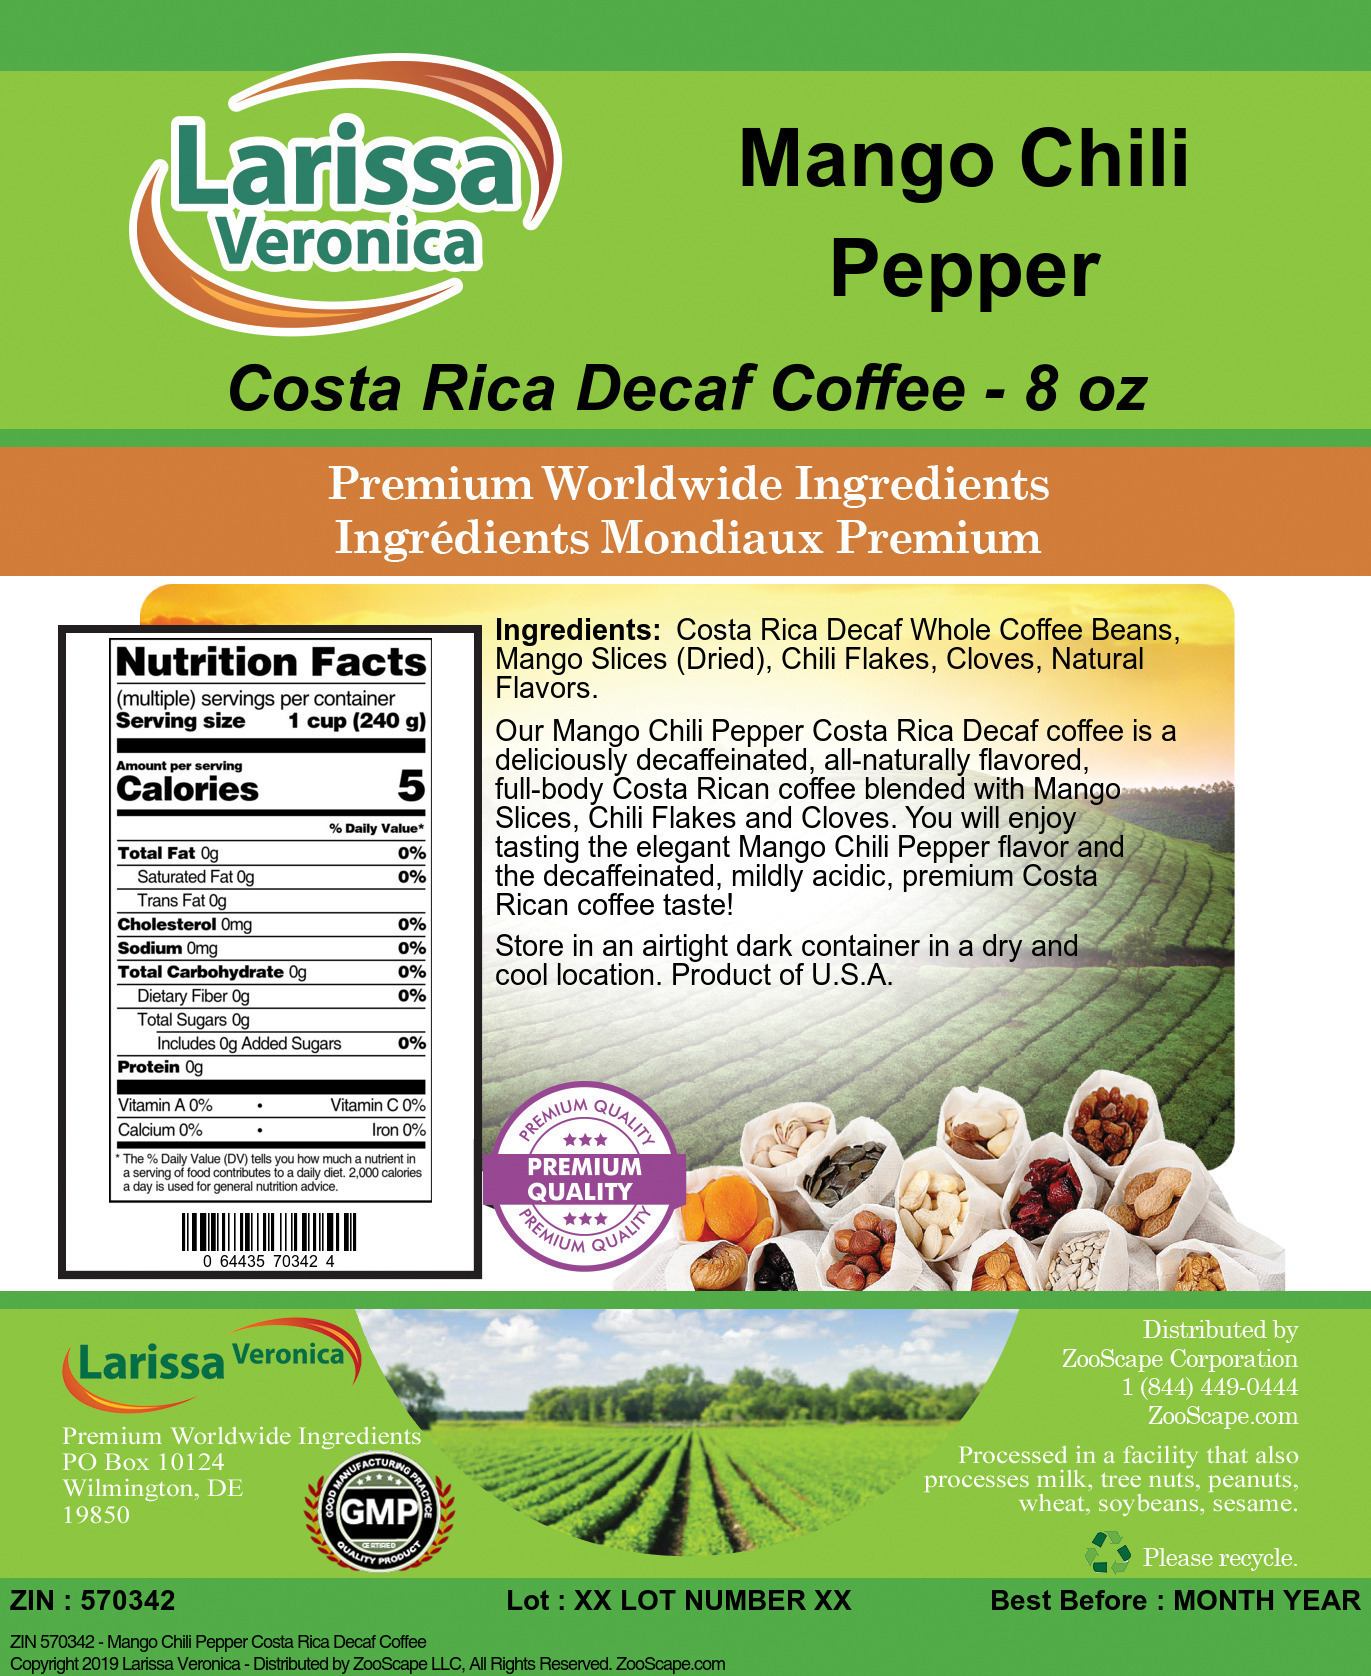 Mango Chili Pepper Costa Rica Decaf Coffee - Label